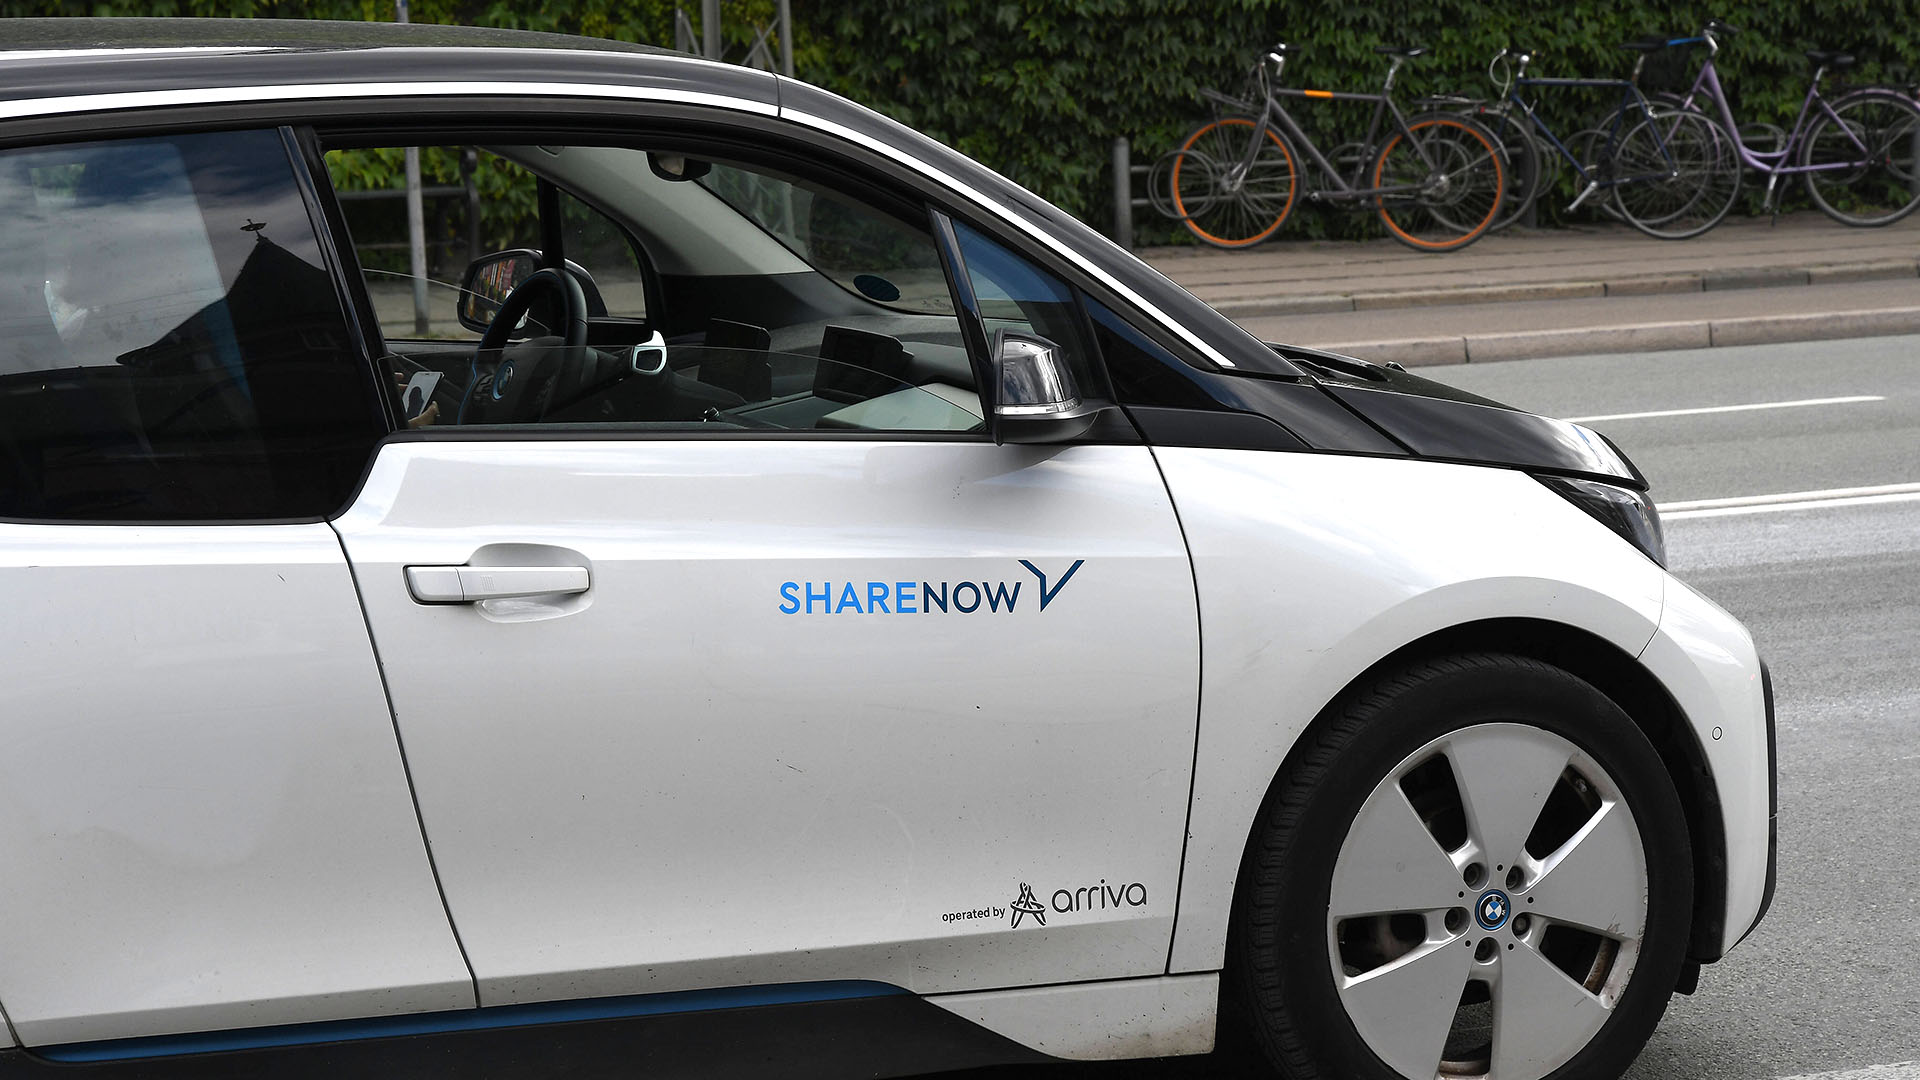 Ein Auto mit der Aufschrift "Share Now" | imago images/Dean Pictures